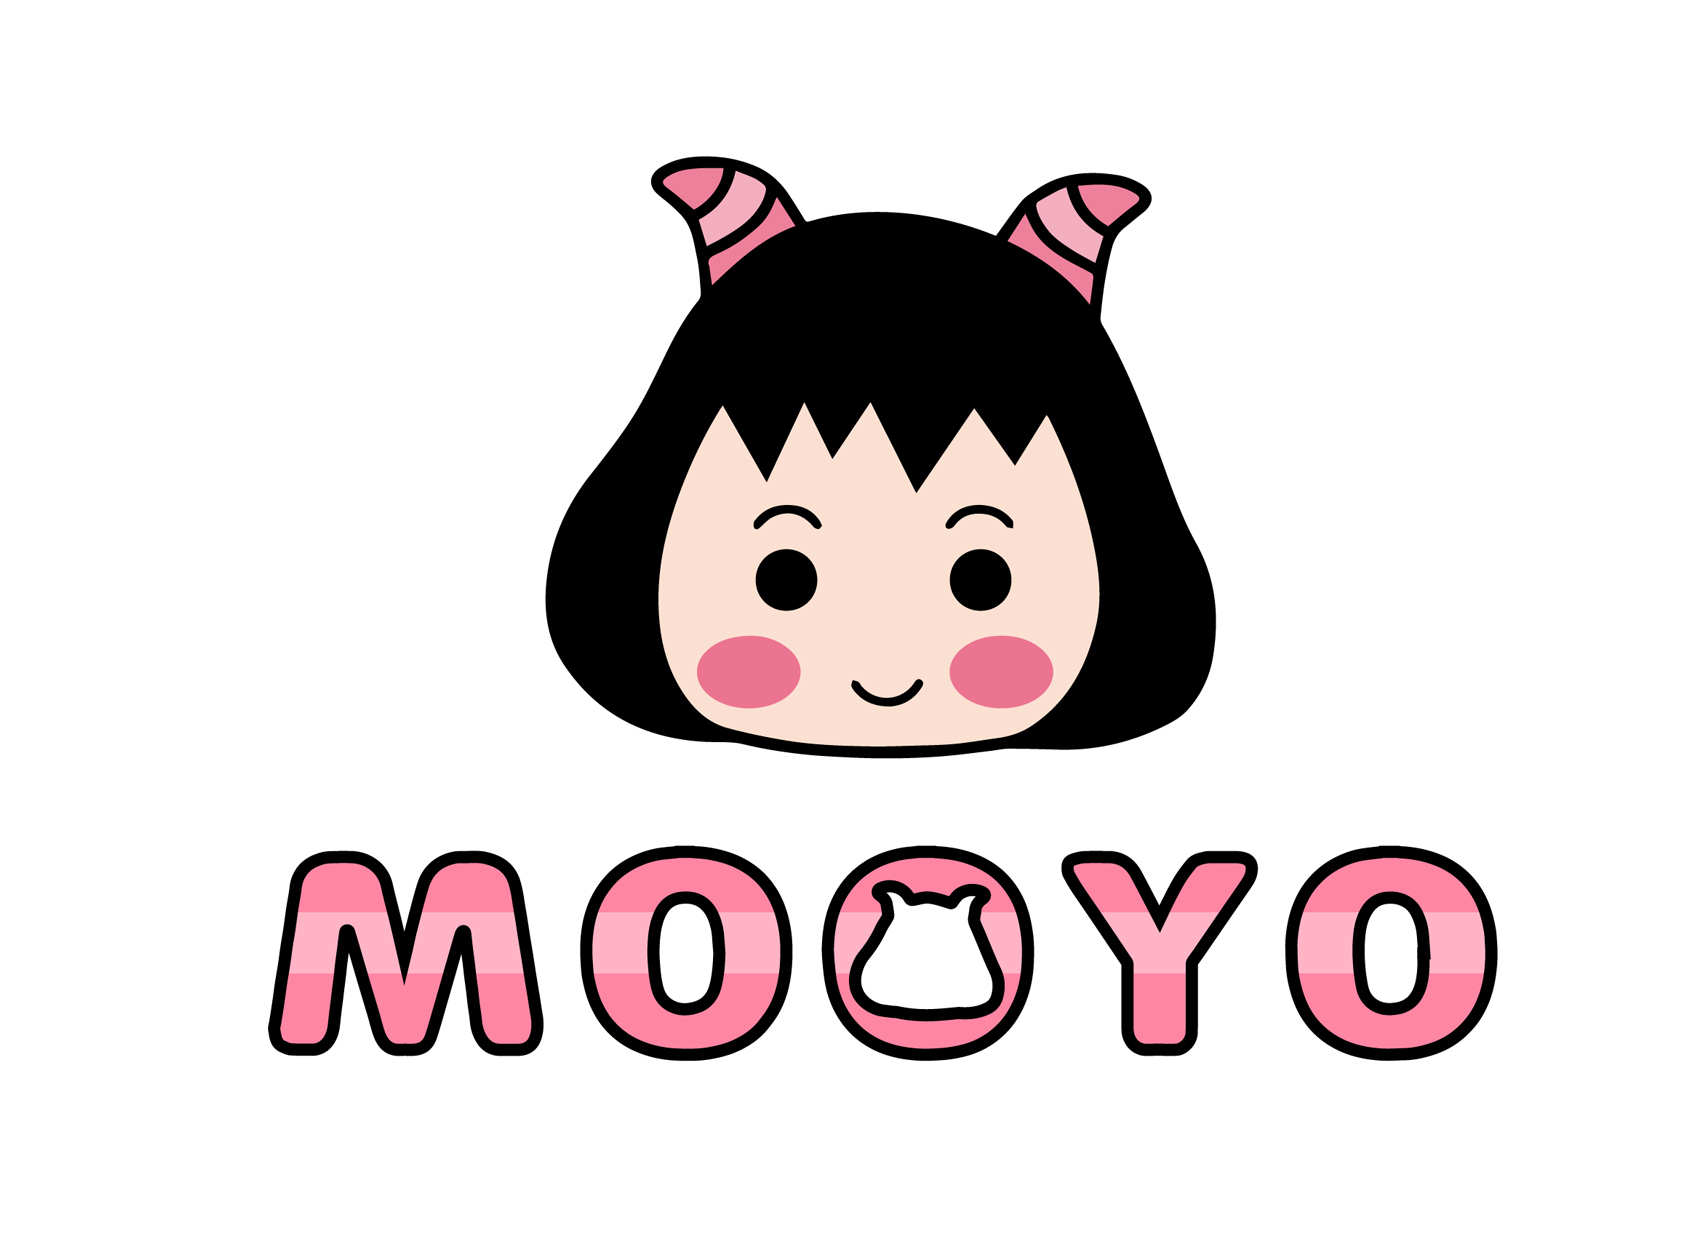 MOOYO